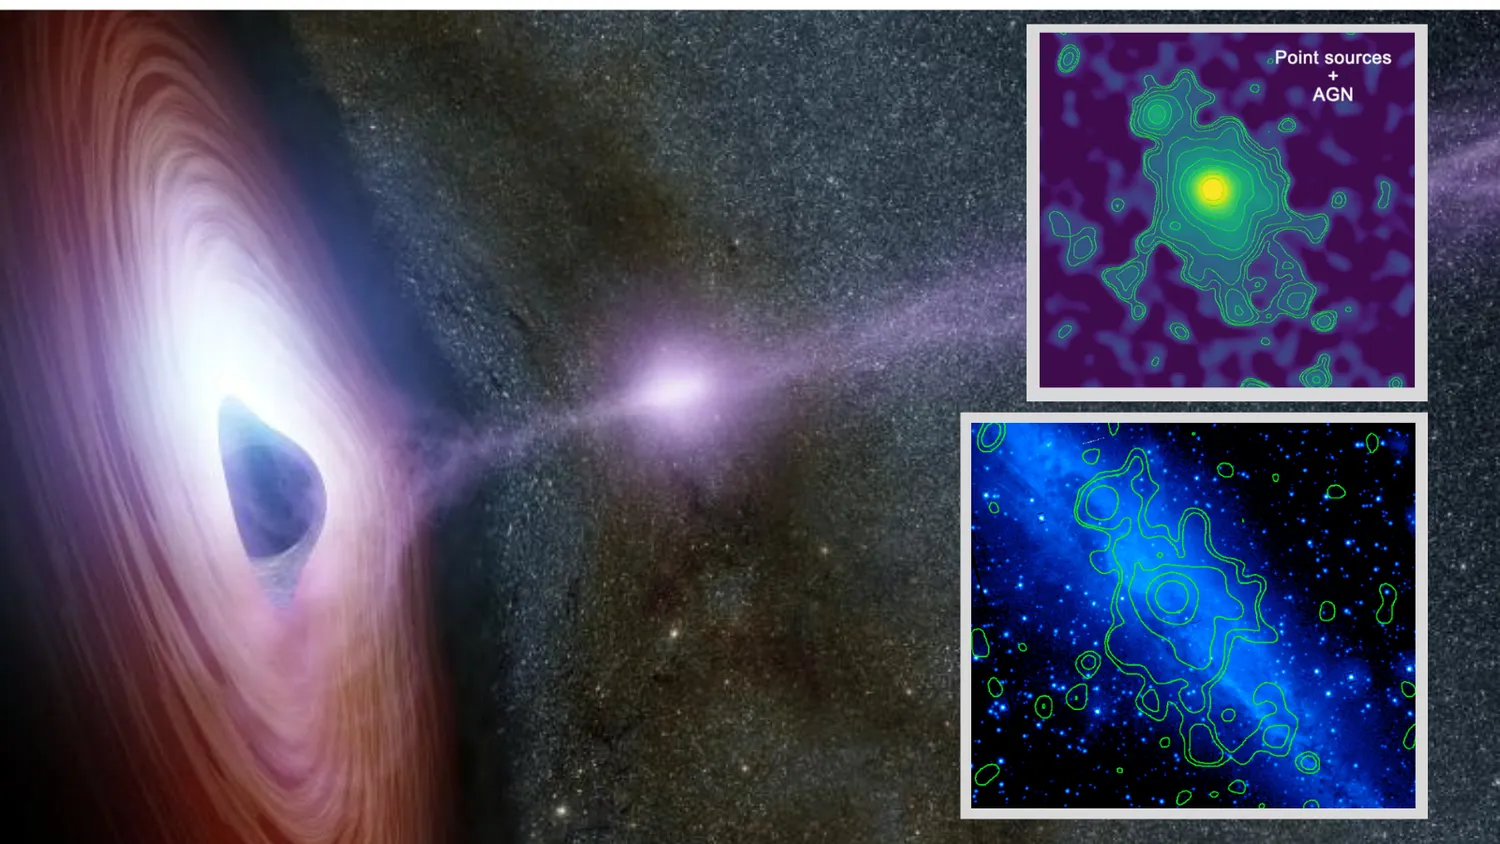 Mehr über den Artikel erfahren Wissenschaftler entdecken kosmisches Fossil, das durch ein ausbrechendes supermassives schwarzes Loch entstanden ist